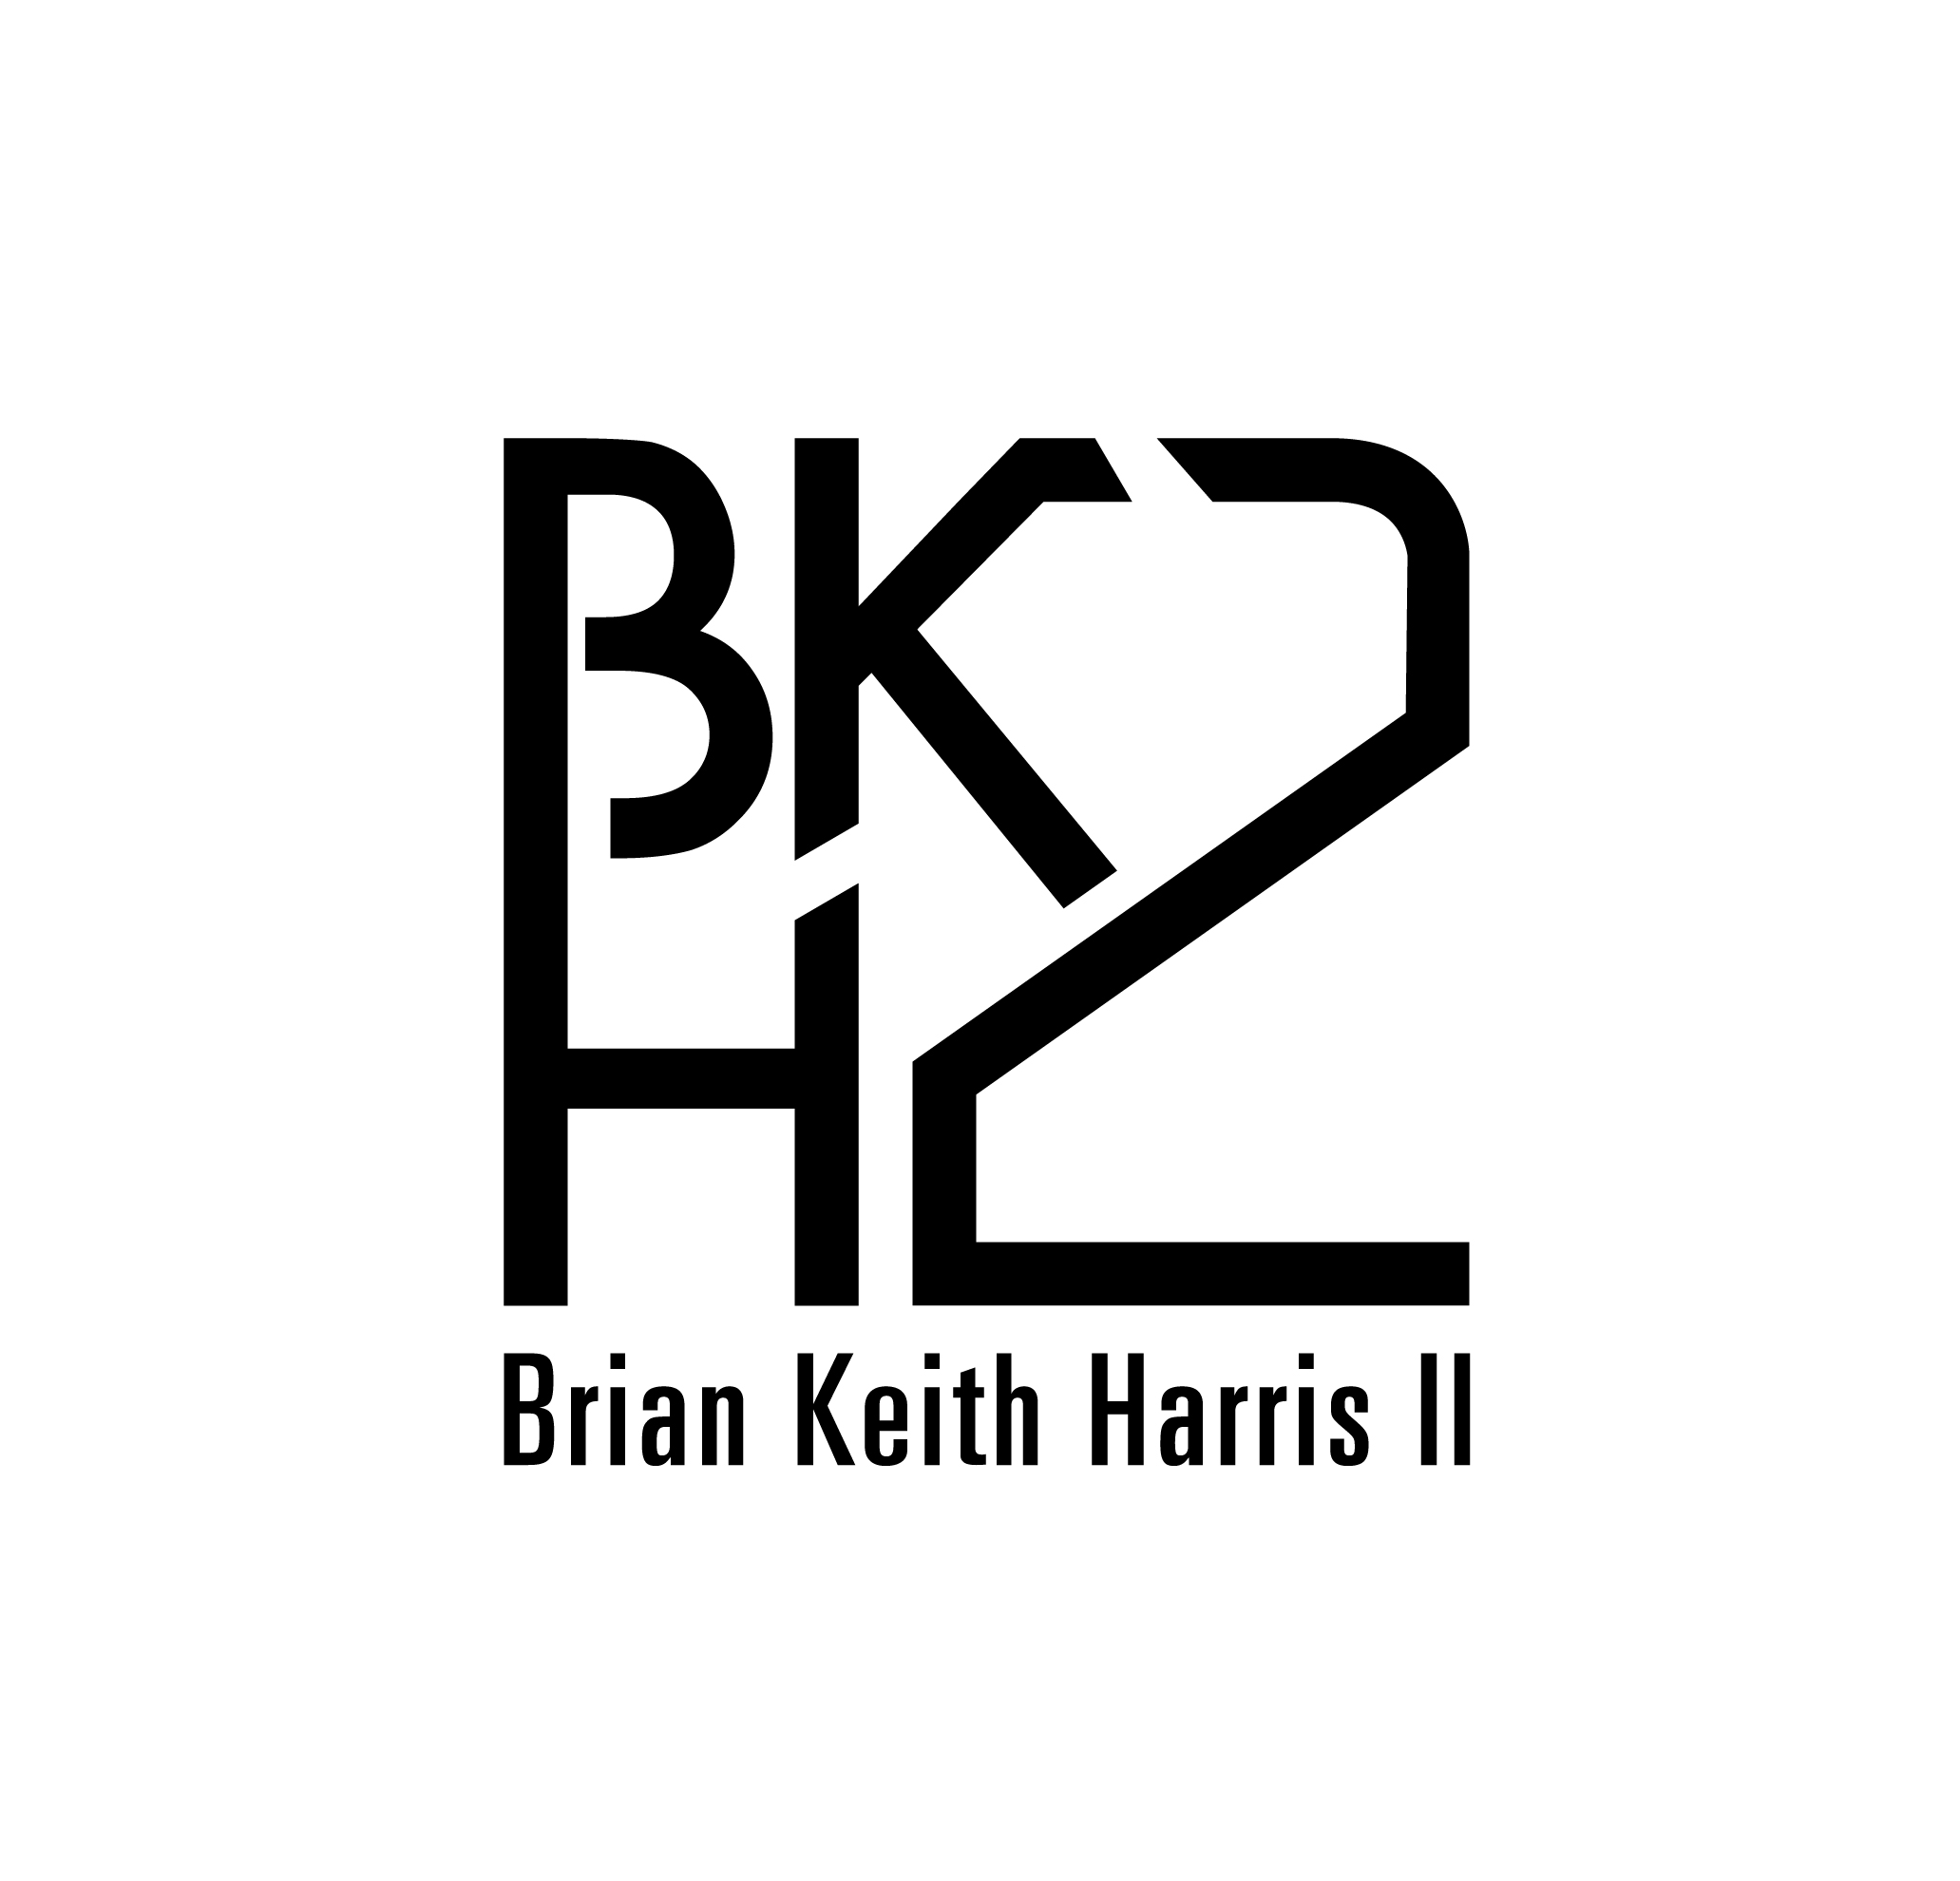 Brian Keith Harris